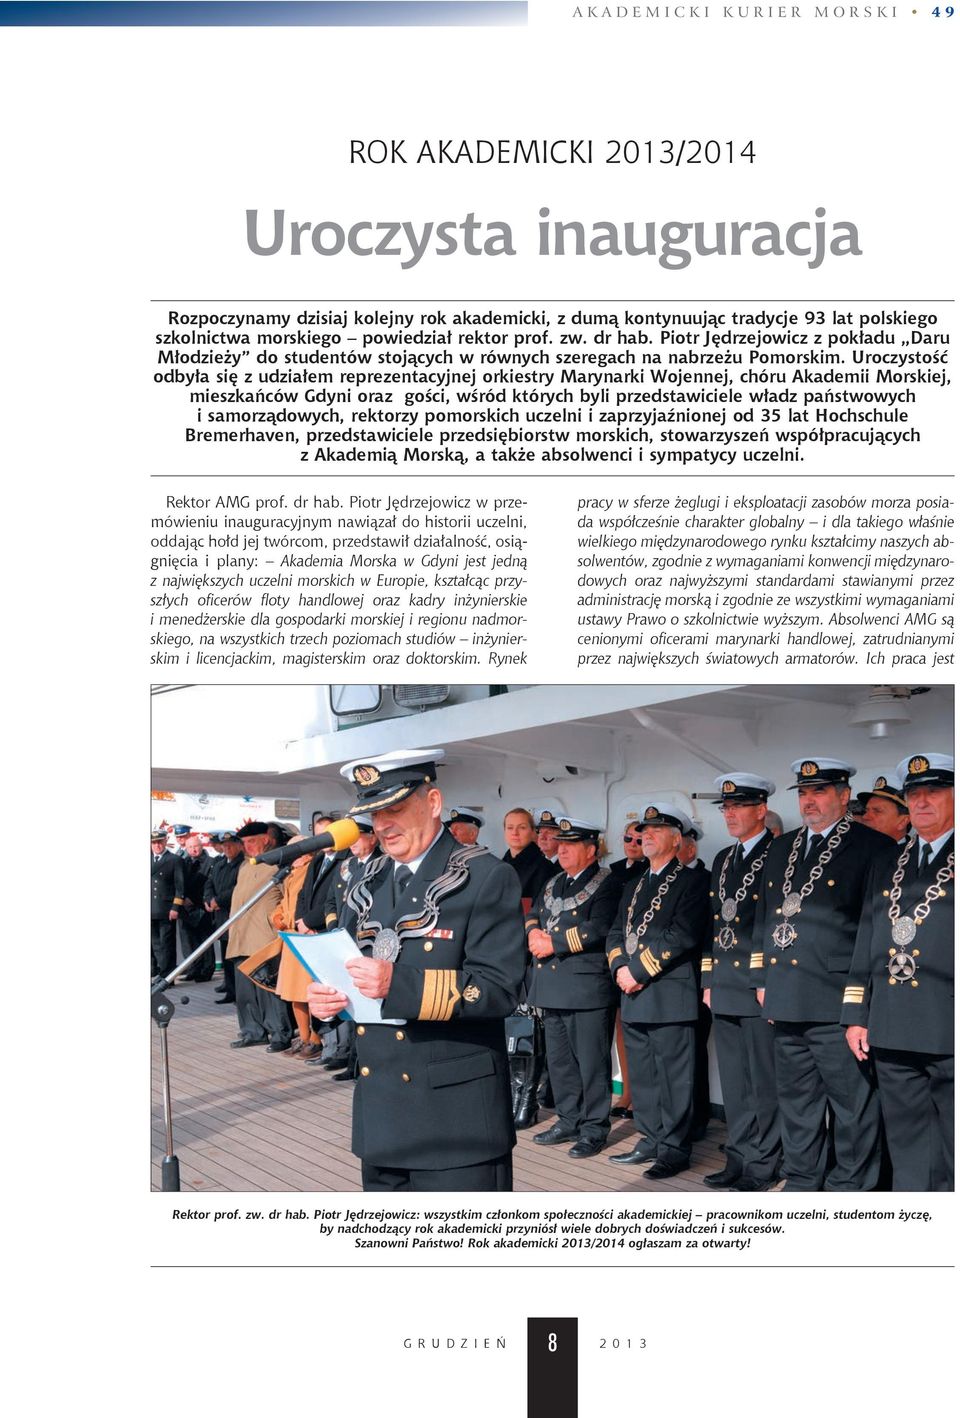 uroczystość odbyła się z udziałem reprezentacyjnej orkiestry marynarki Wojennej, chóru Akademii morskiej, mieszkańców Gdyni oraz gości, wśród których byli przedstawiciele władz państwowych i